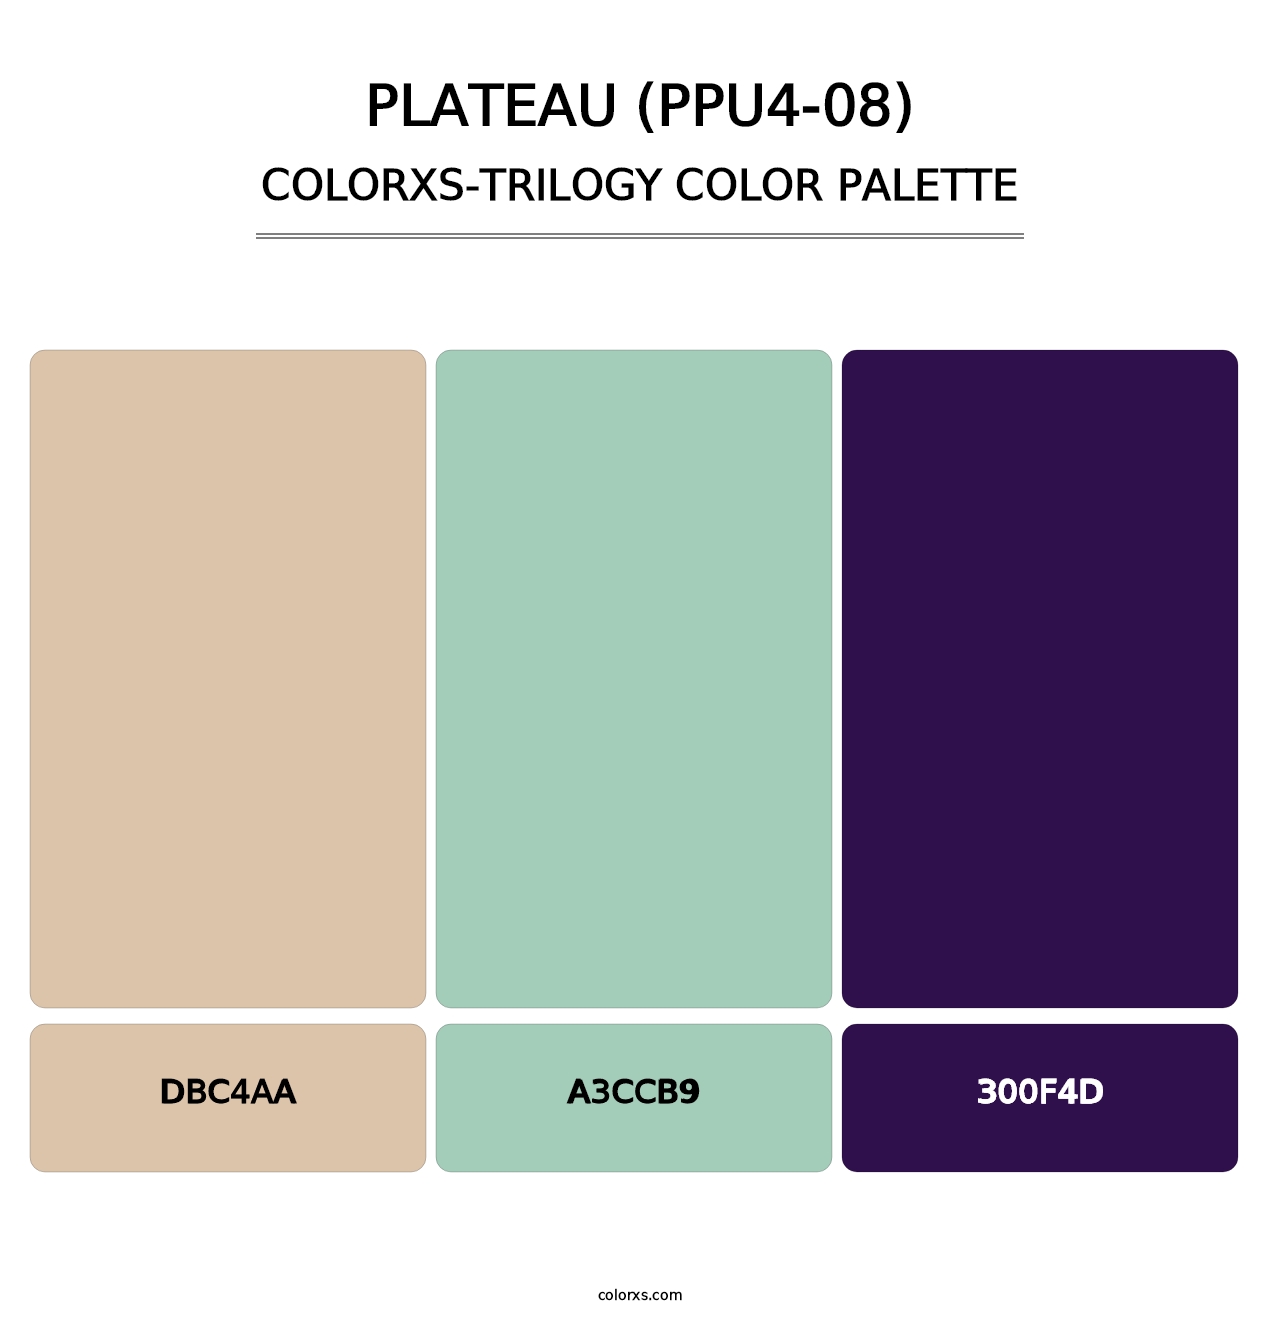 Plateau (PPU4-08) - Colorxs Trilogy Palette